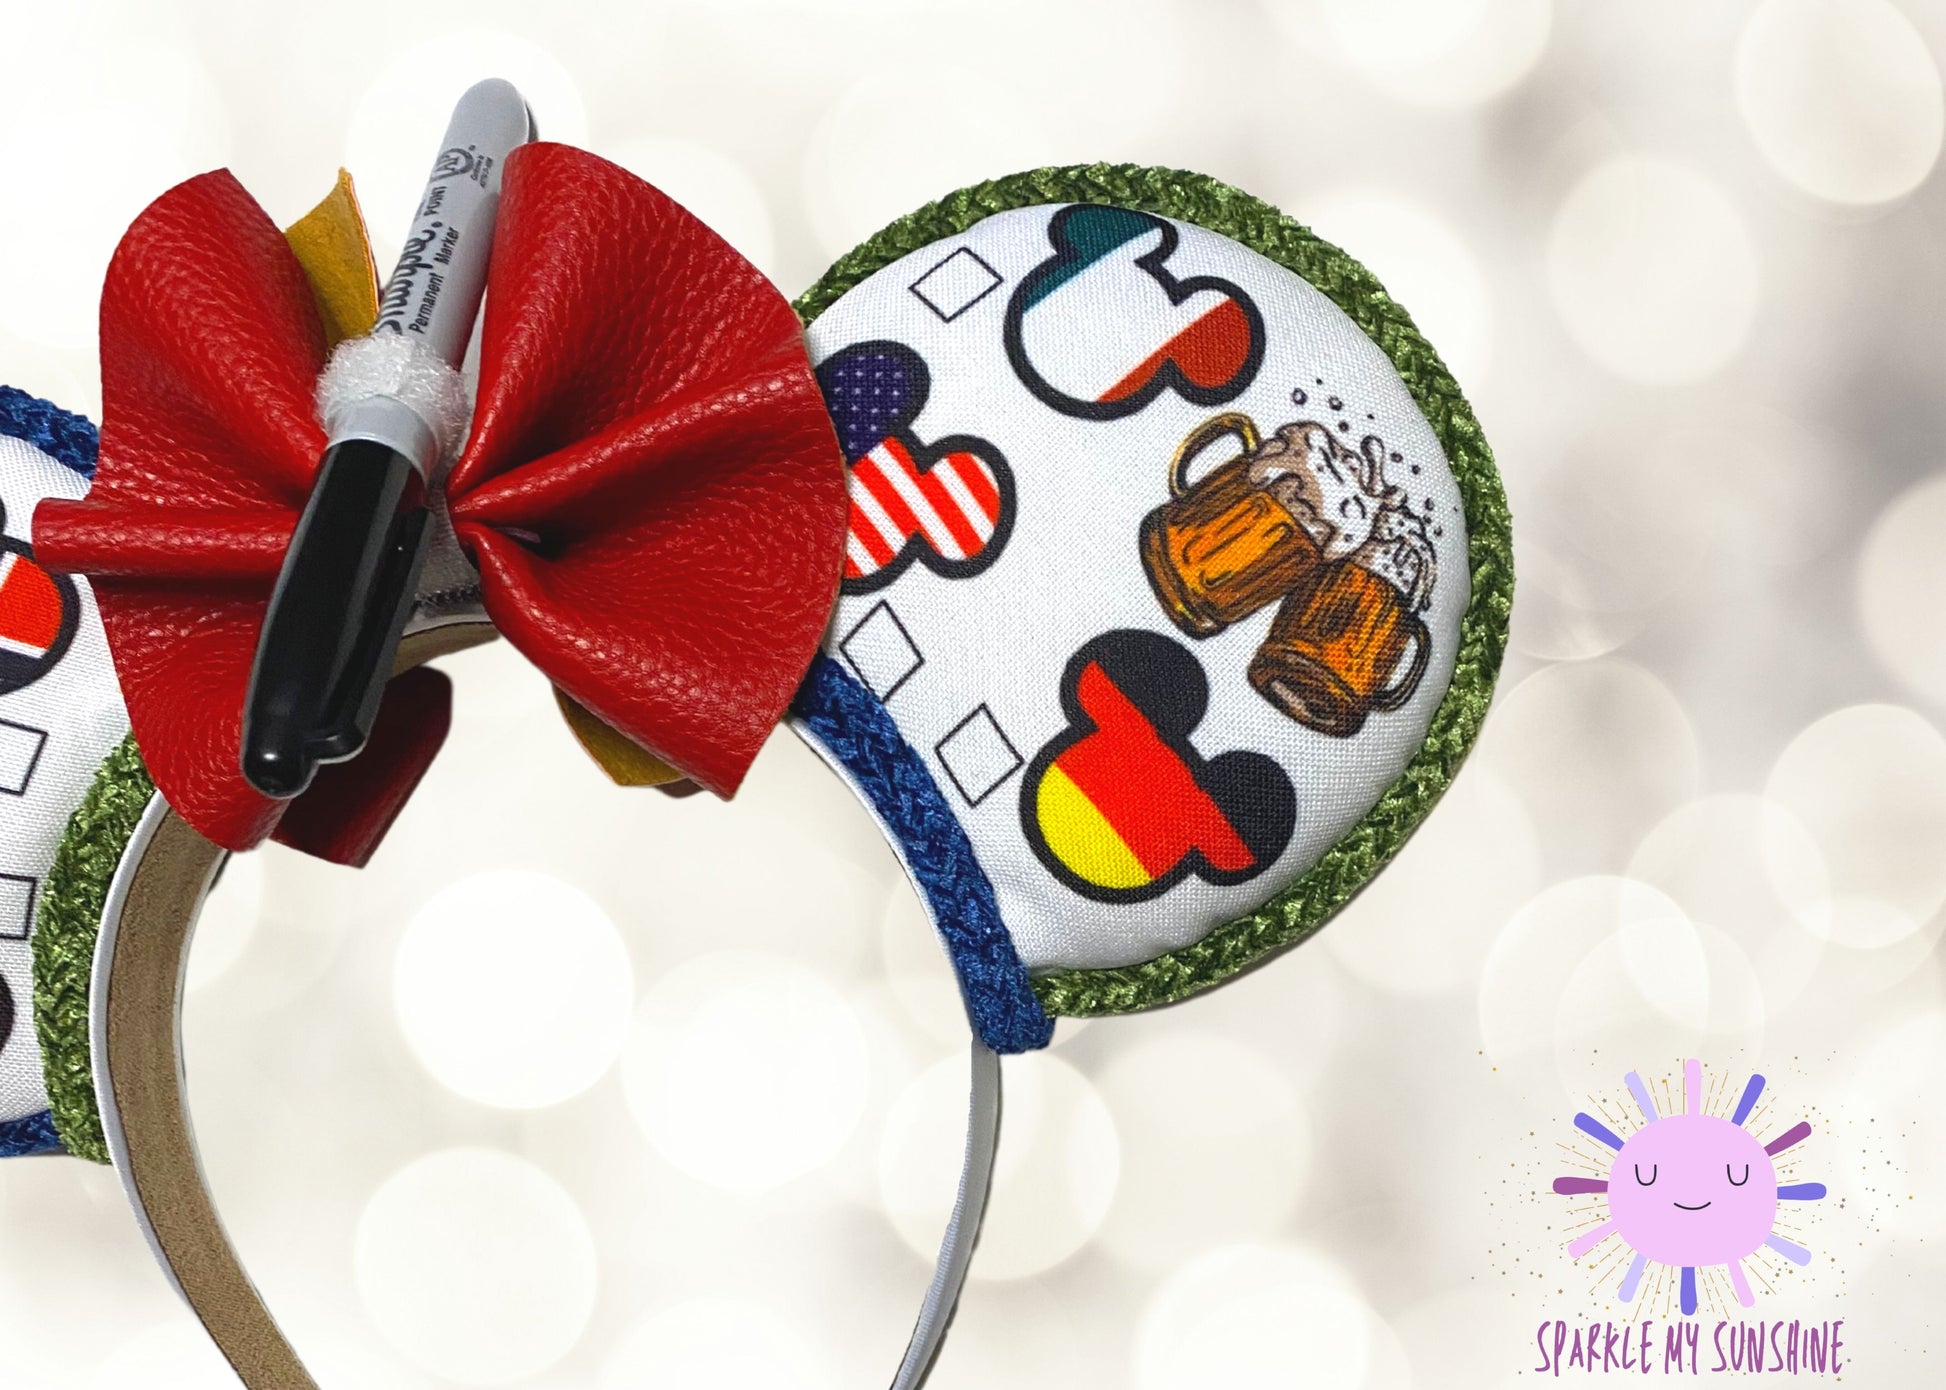 SPECIALOFFER Disney Mickey Bling Minnie Mouse Hidden Ear Flower